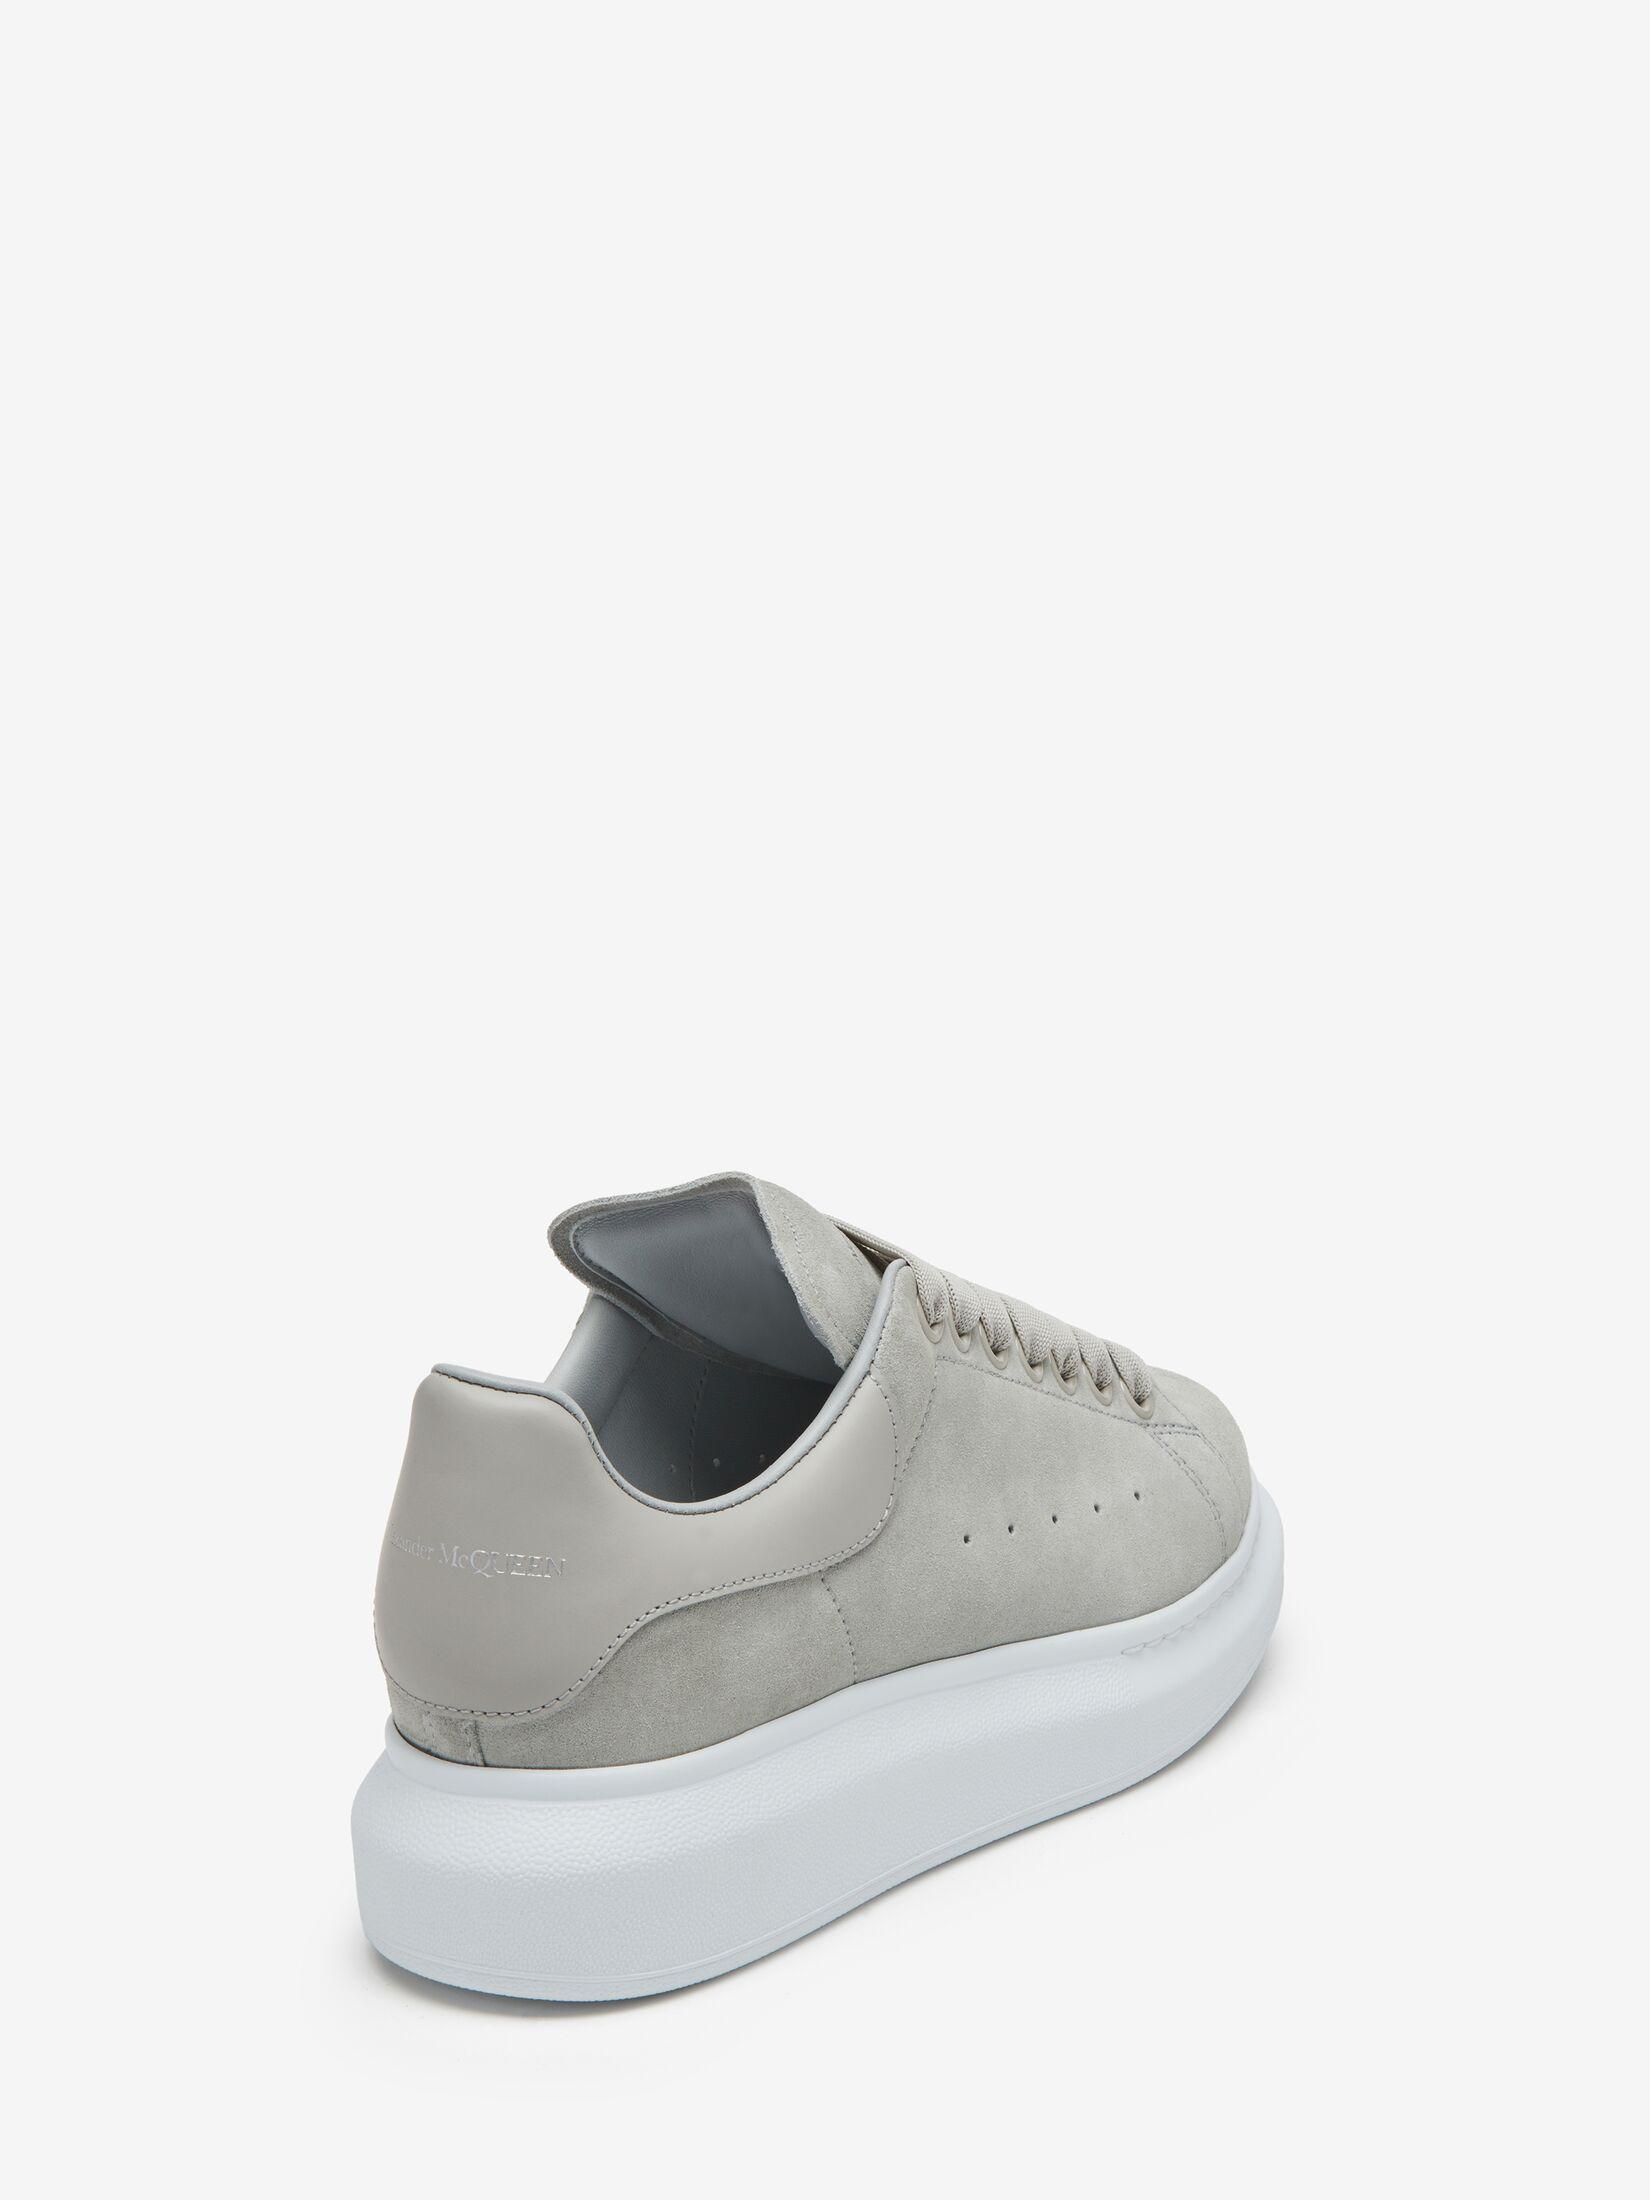 Alexander McQueen Metallic Grey Leather Platform Sneakers Size 39.5 Alexander  McQueen